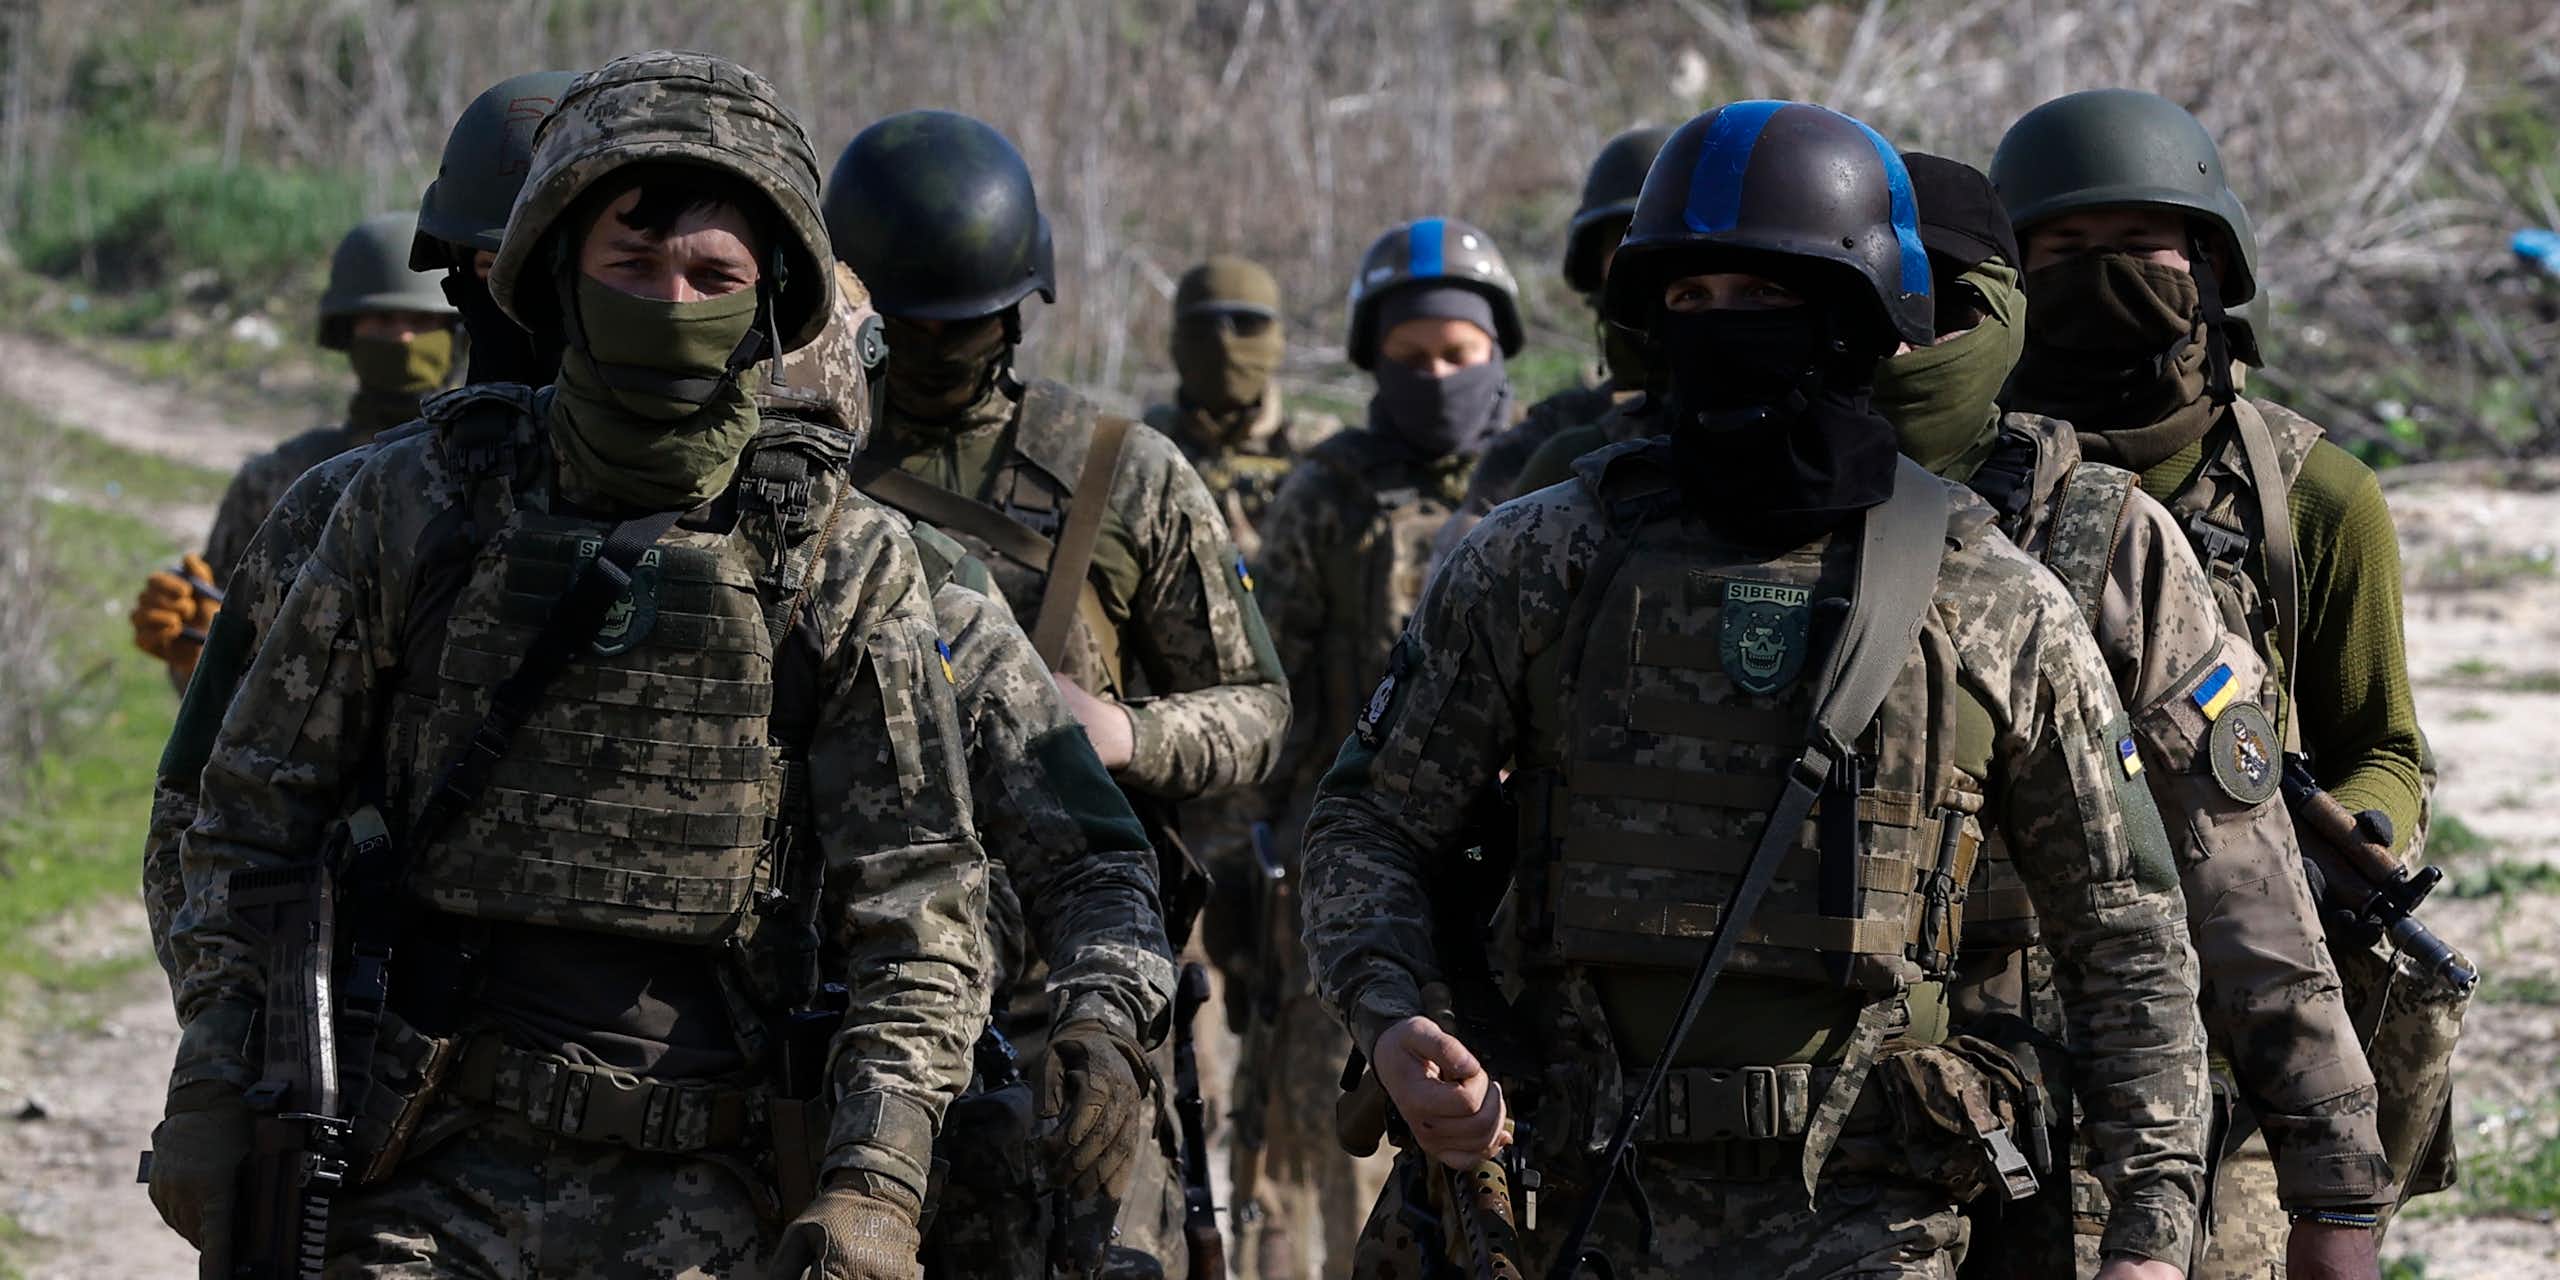 Ukrainian soldiers march in formation wearing full battledress.